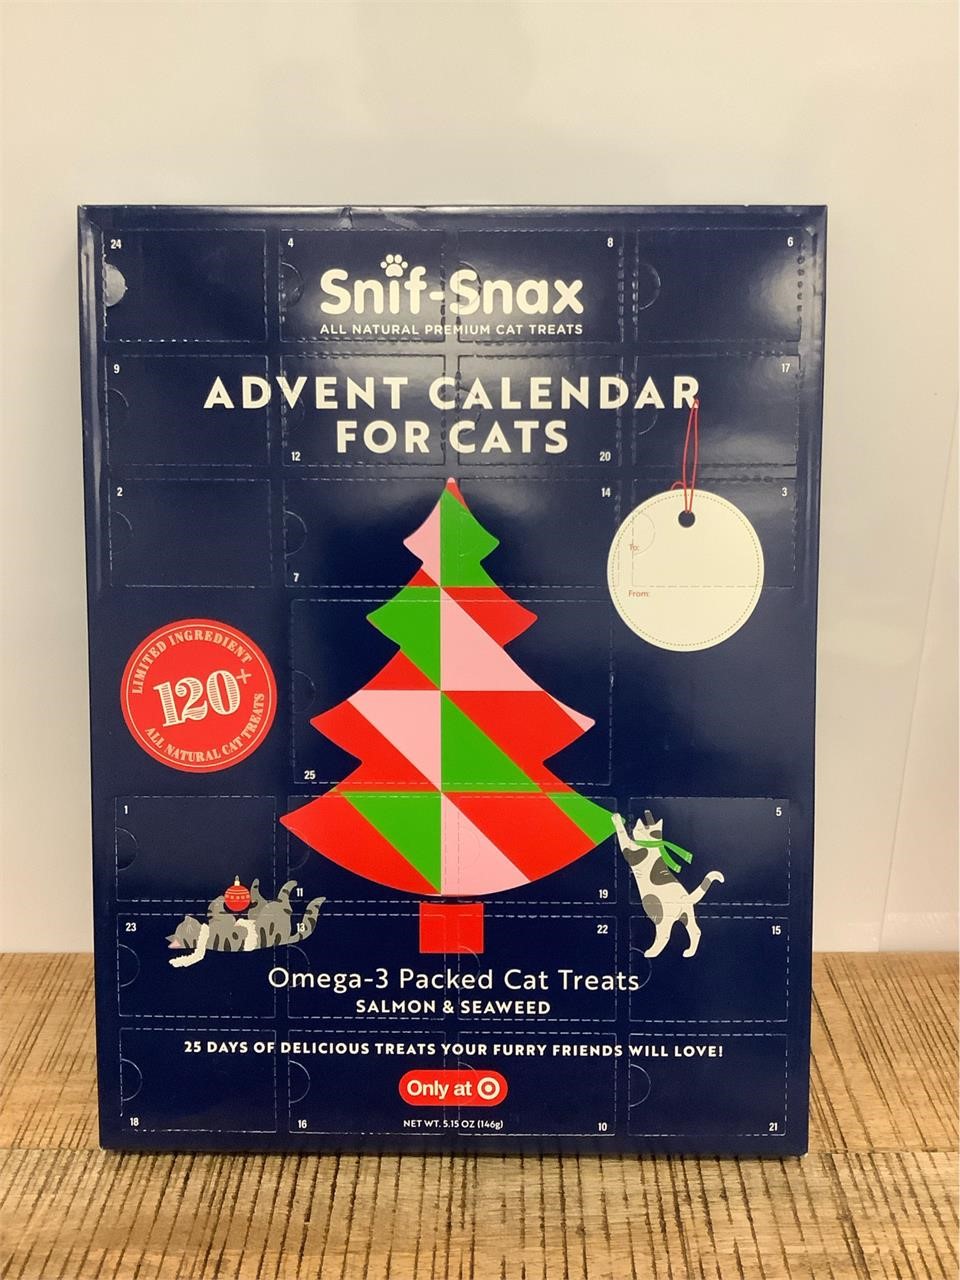 $15  Snif-Snax Advent Calendar - 5.11oz.-for cats